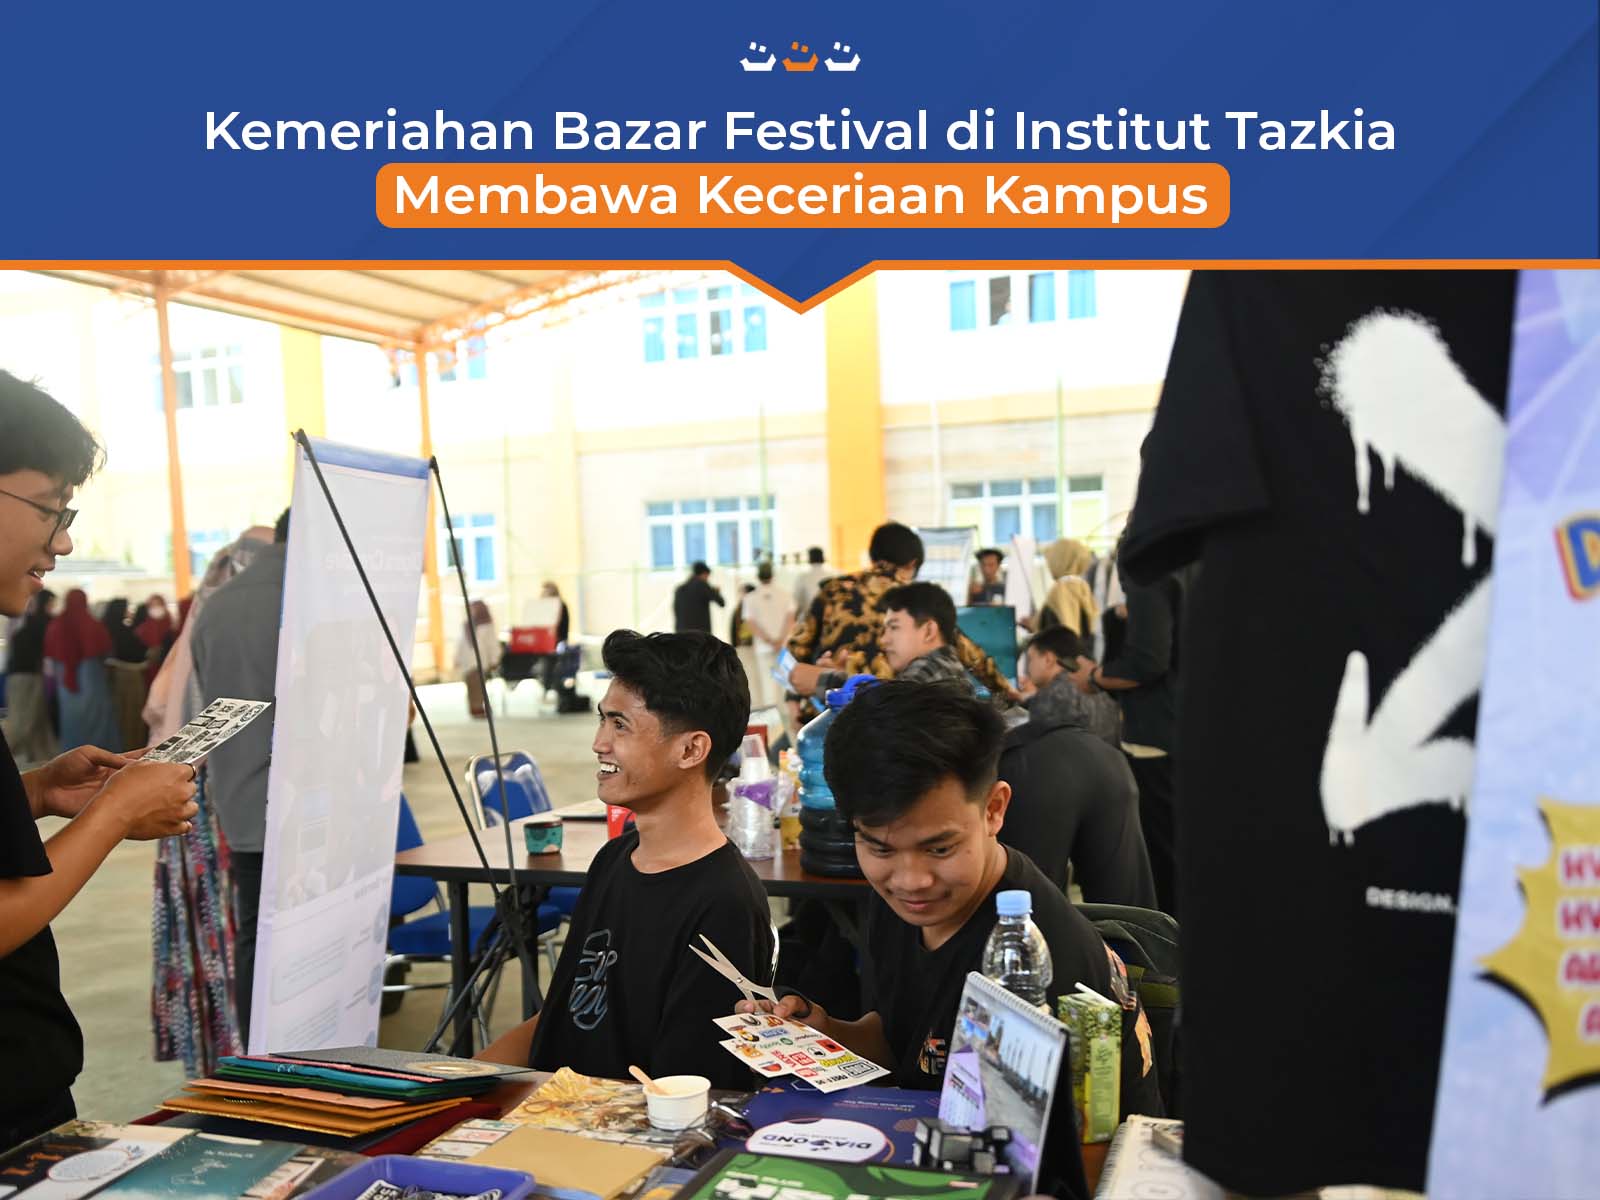 Kemeriahan Bazar Festival di Institut Tazkia Membawa Keceriaan Kampus